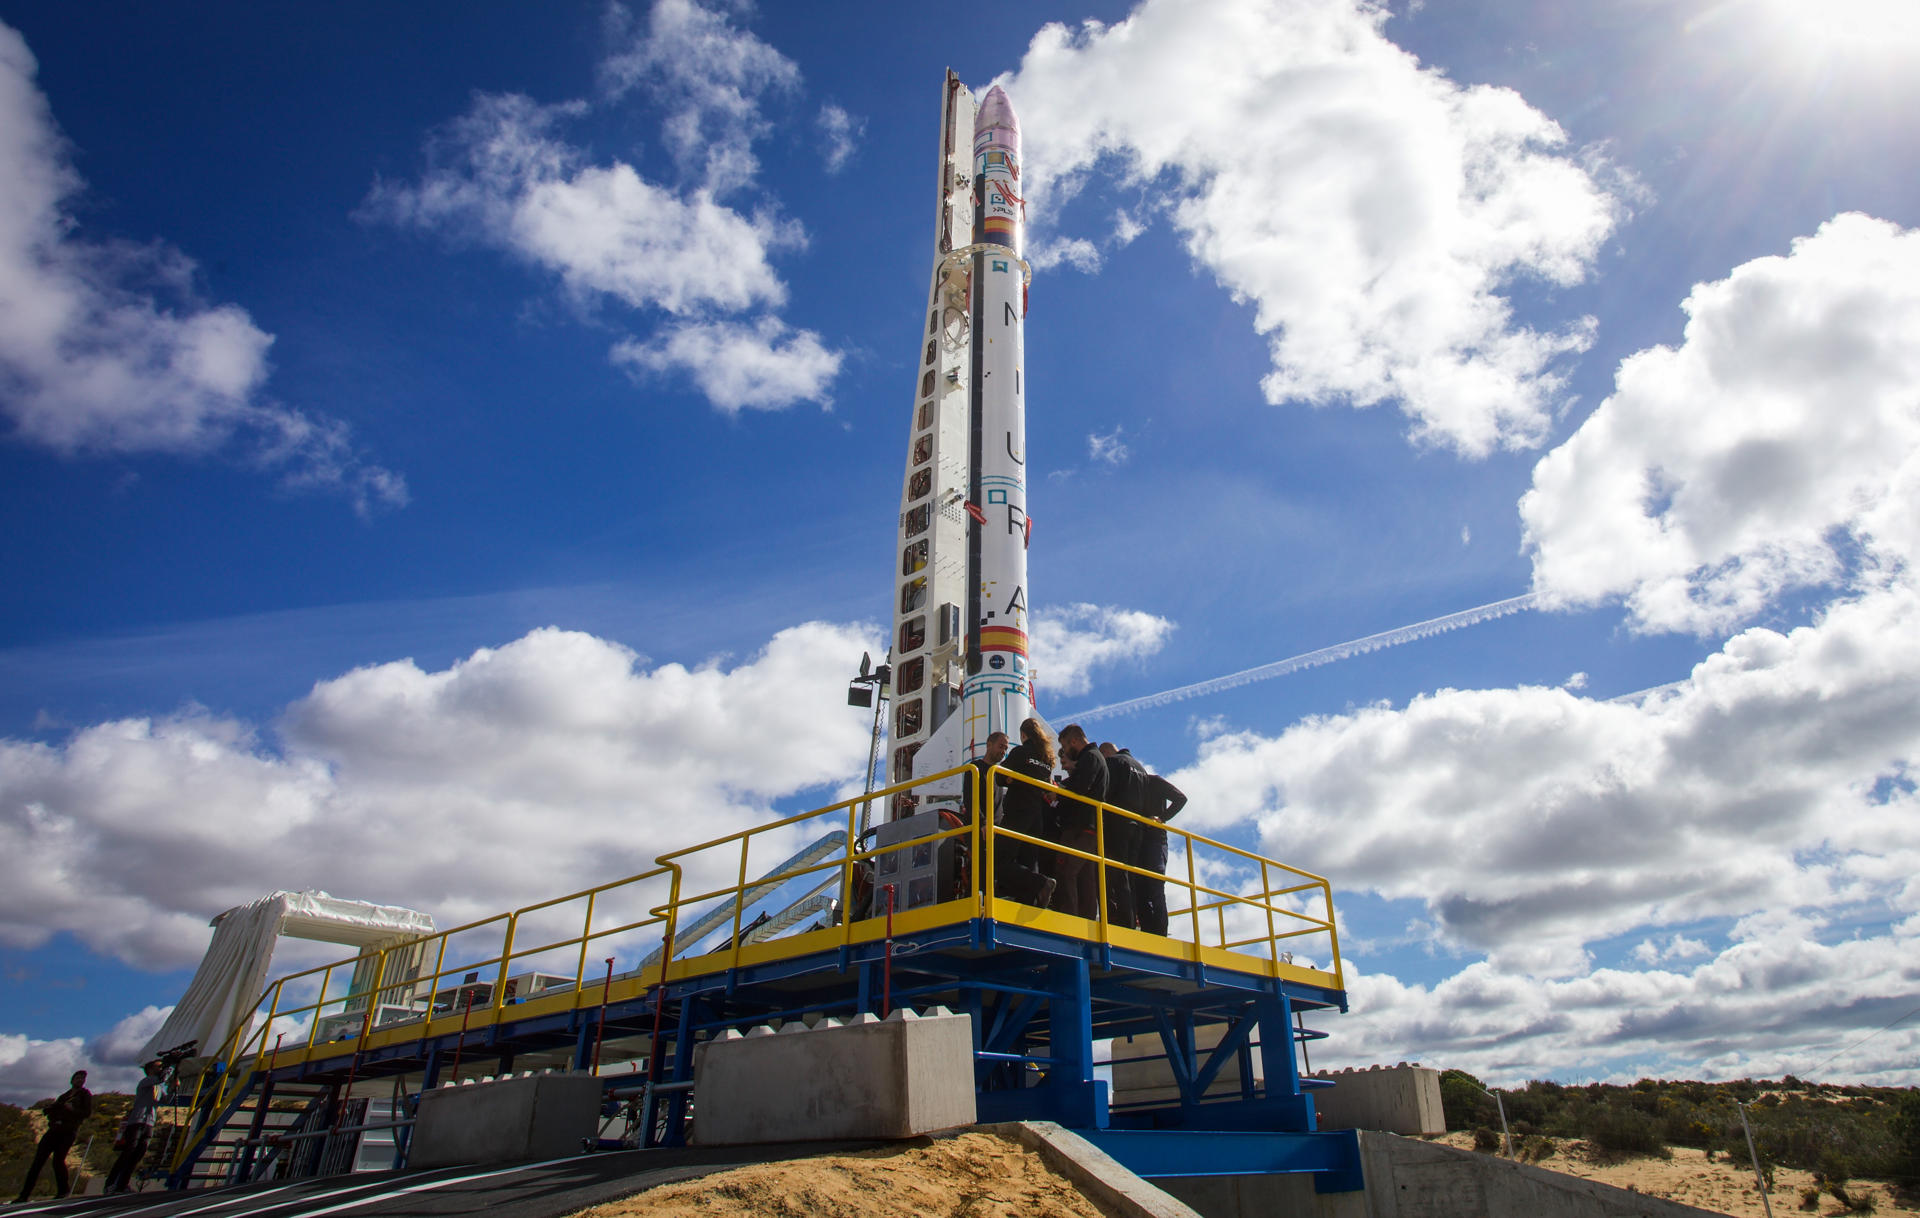 Plataforma de lanzamiento del primer cohete privado europeo, MIURA 1, en las instalaciones del INTA en El Arenosillo (CEDEA), ubicadas en Mazagón (Huelva), que hoy ha llegado al espacio con éxito. Foto de Archivo. EFE/Julián Pérez